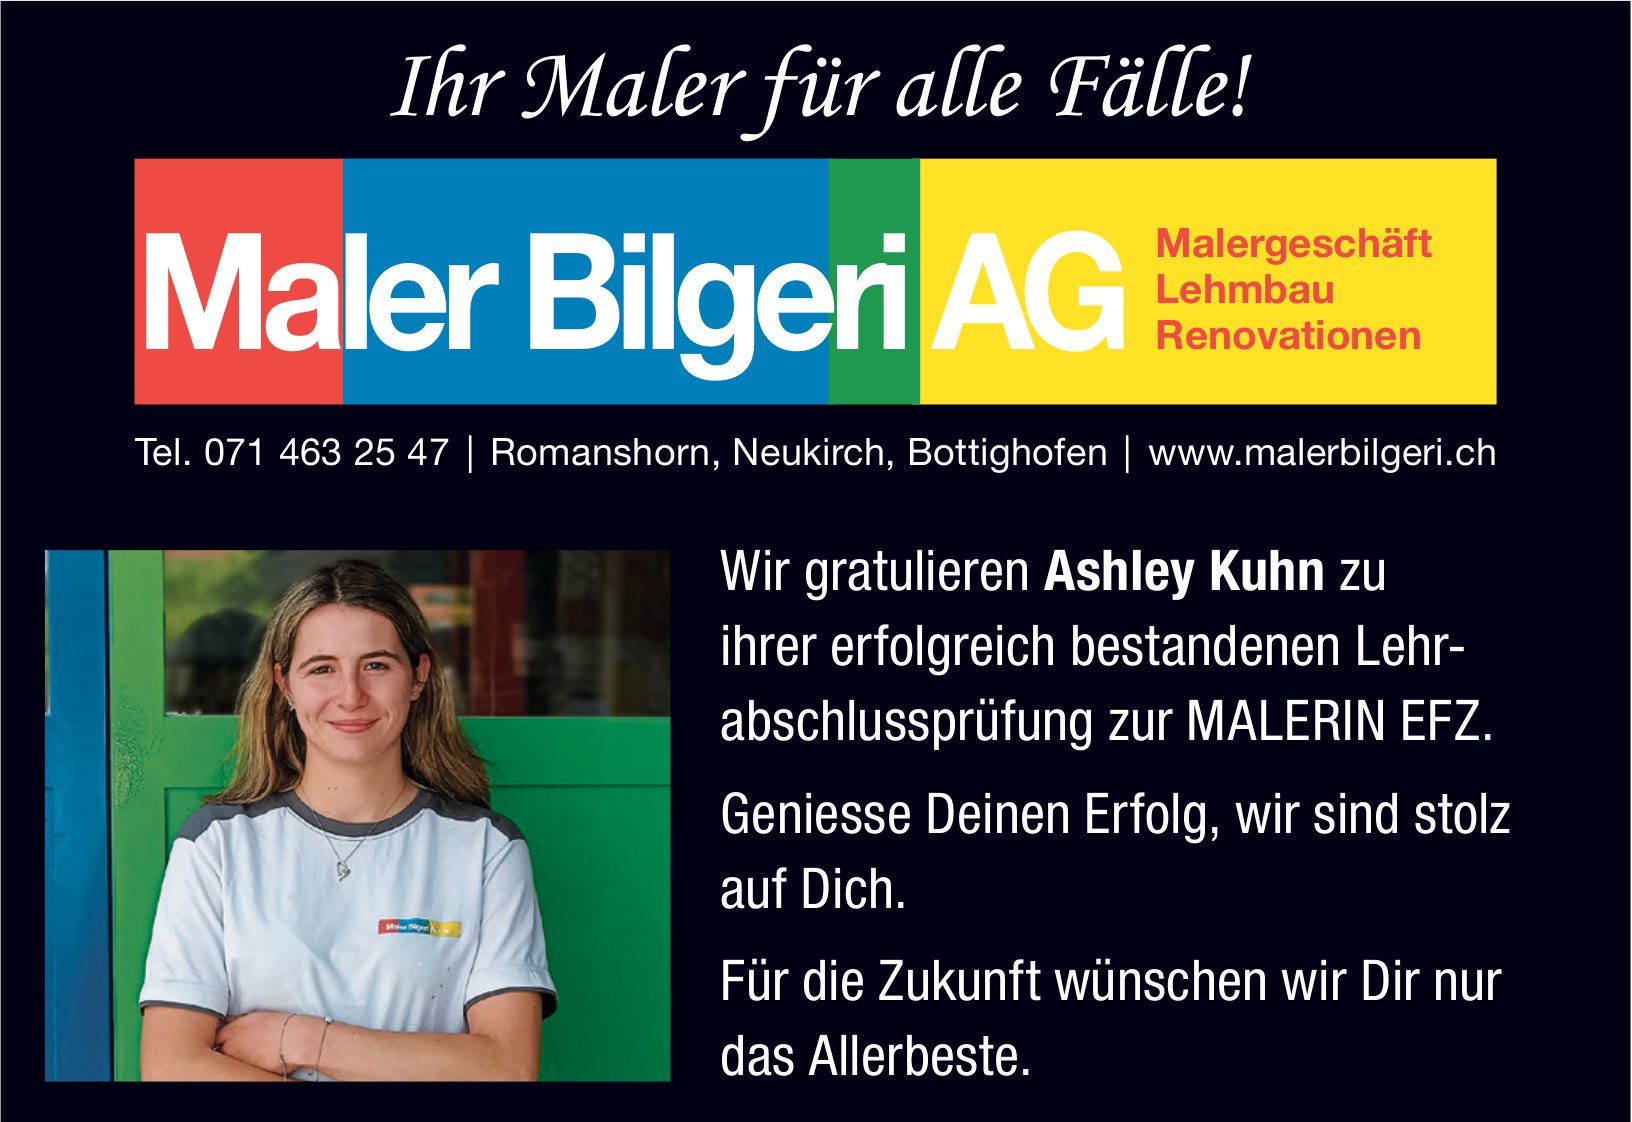 Maler Bilgeri AG, Romanshorn - Wir gratulieren Ashley Kuhn zu ihrer erfolgreich bestandenen Lehr- abschlussprüfung zur Malerin EFZ